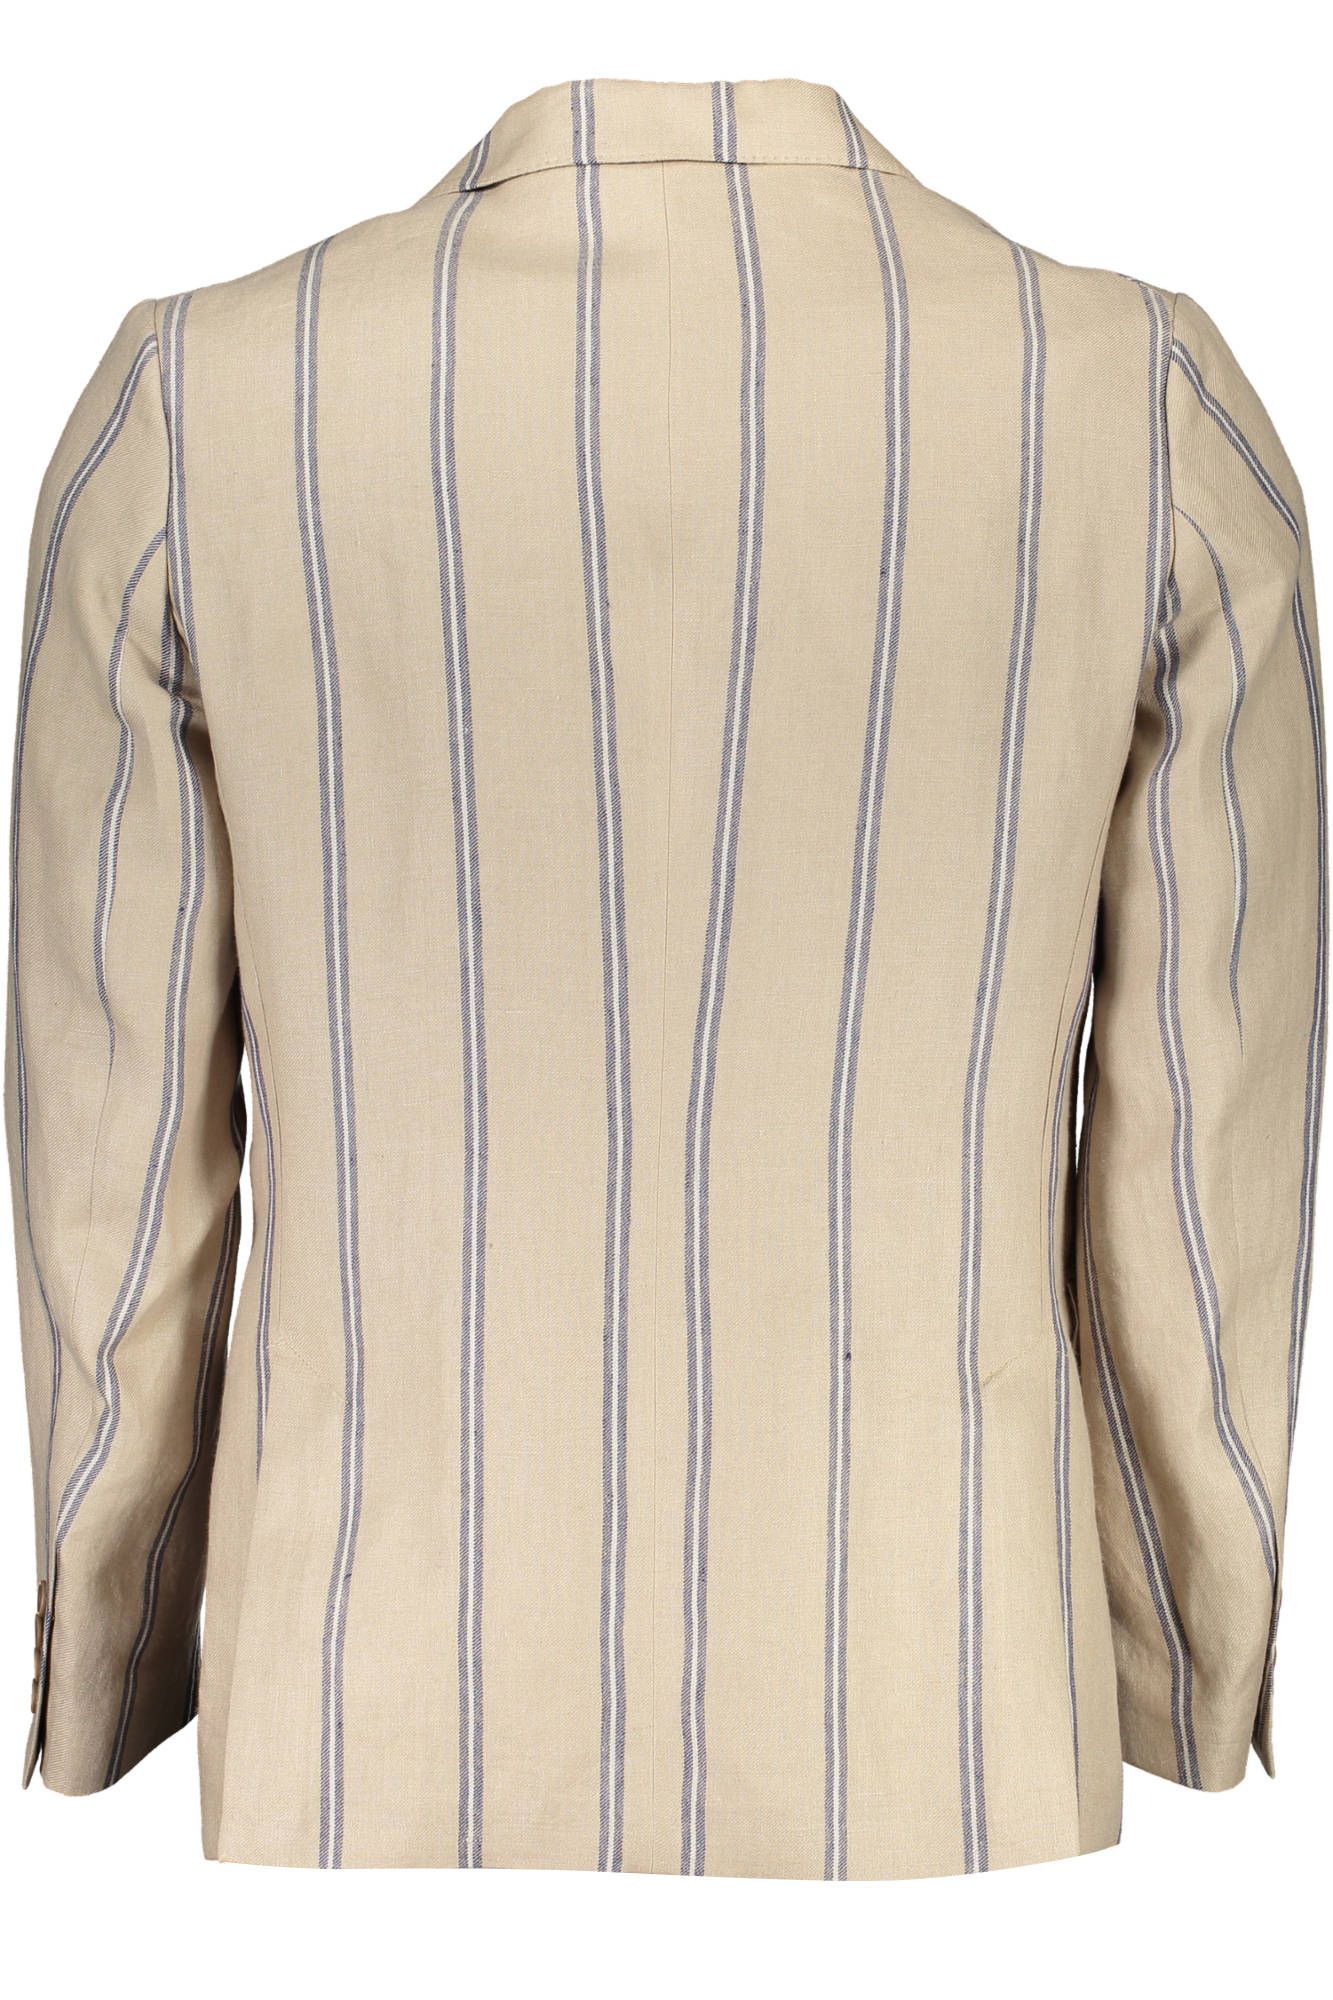 Classic Linen Single-Breast Beige Jacket